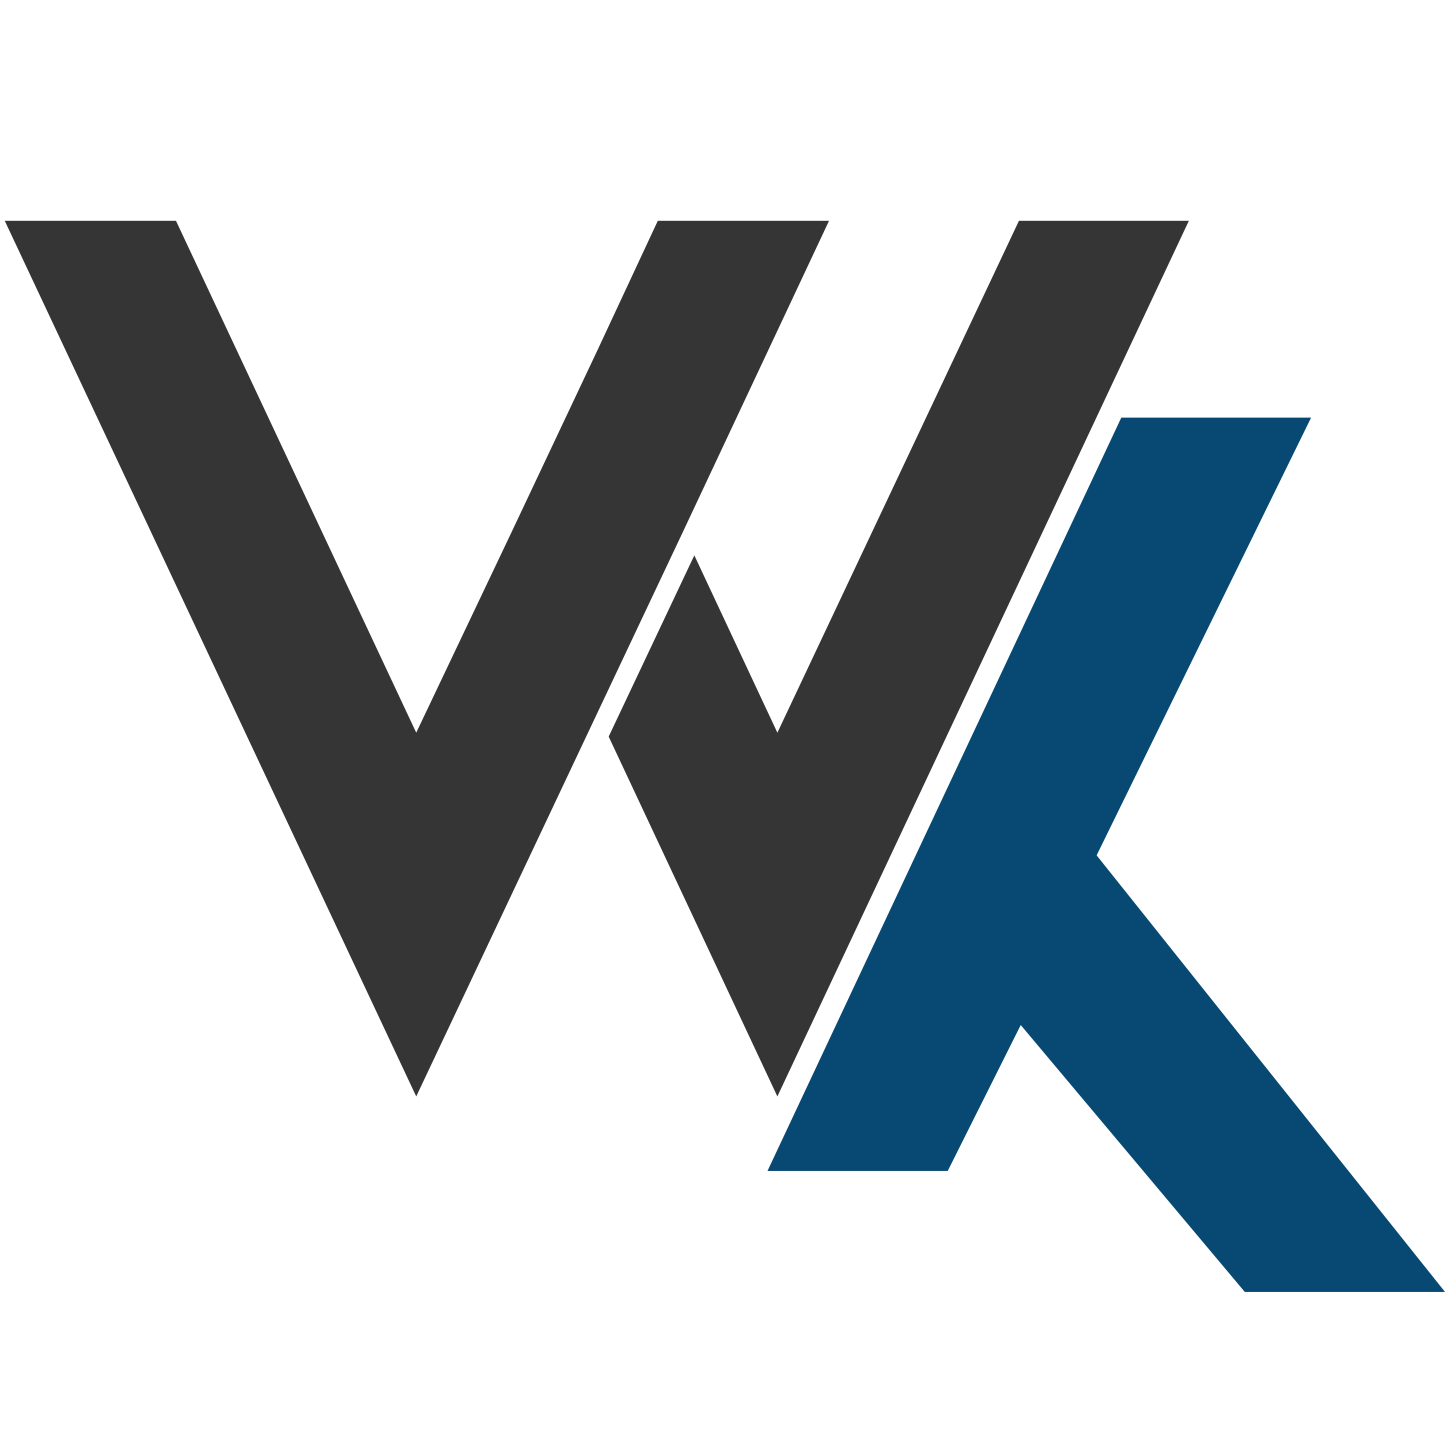 weblapkeszitok-logo